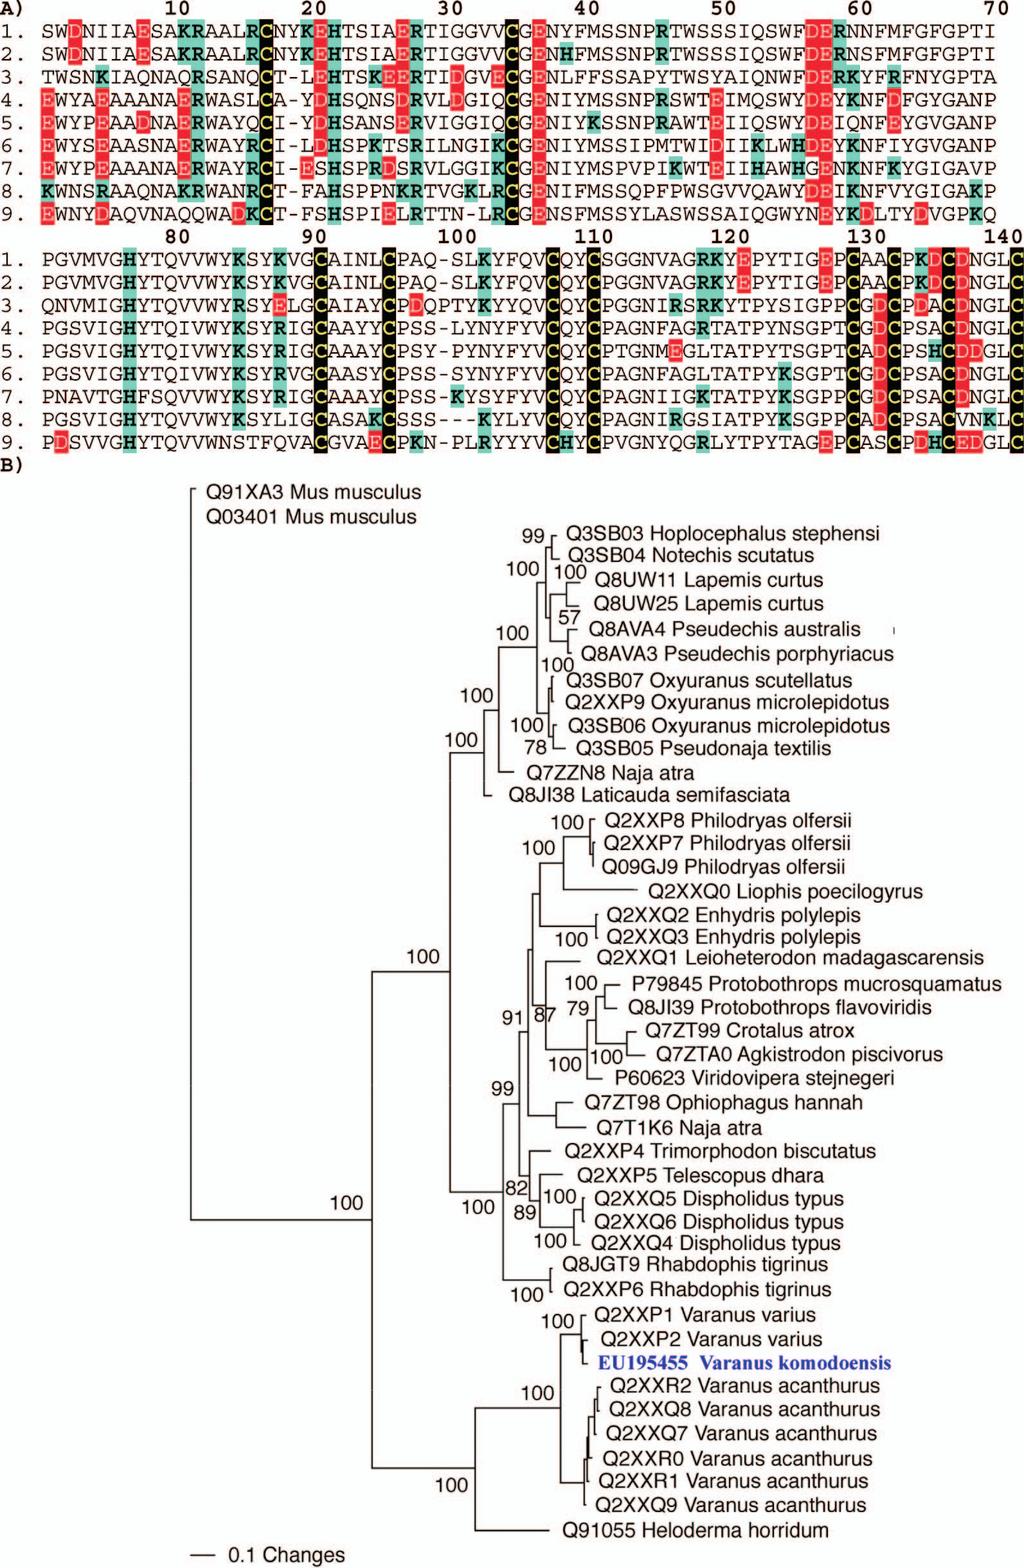 Fig. S3. Molecular evolution of Varanus komodoensis AVIT toxins.